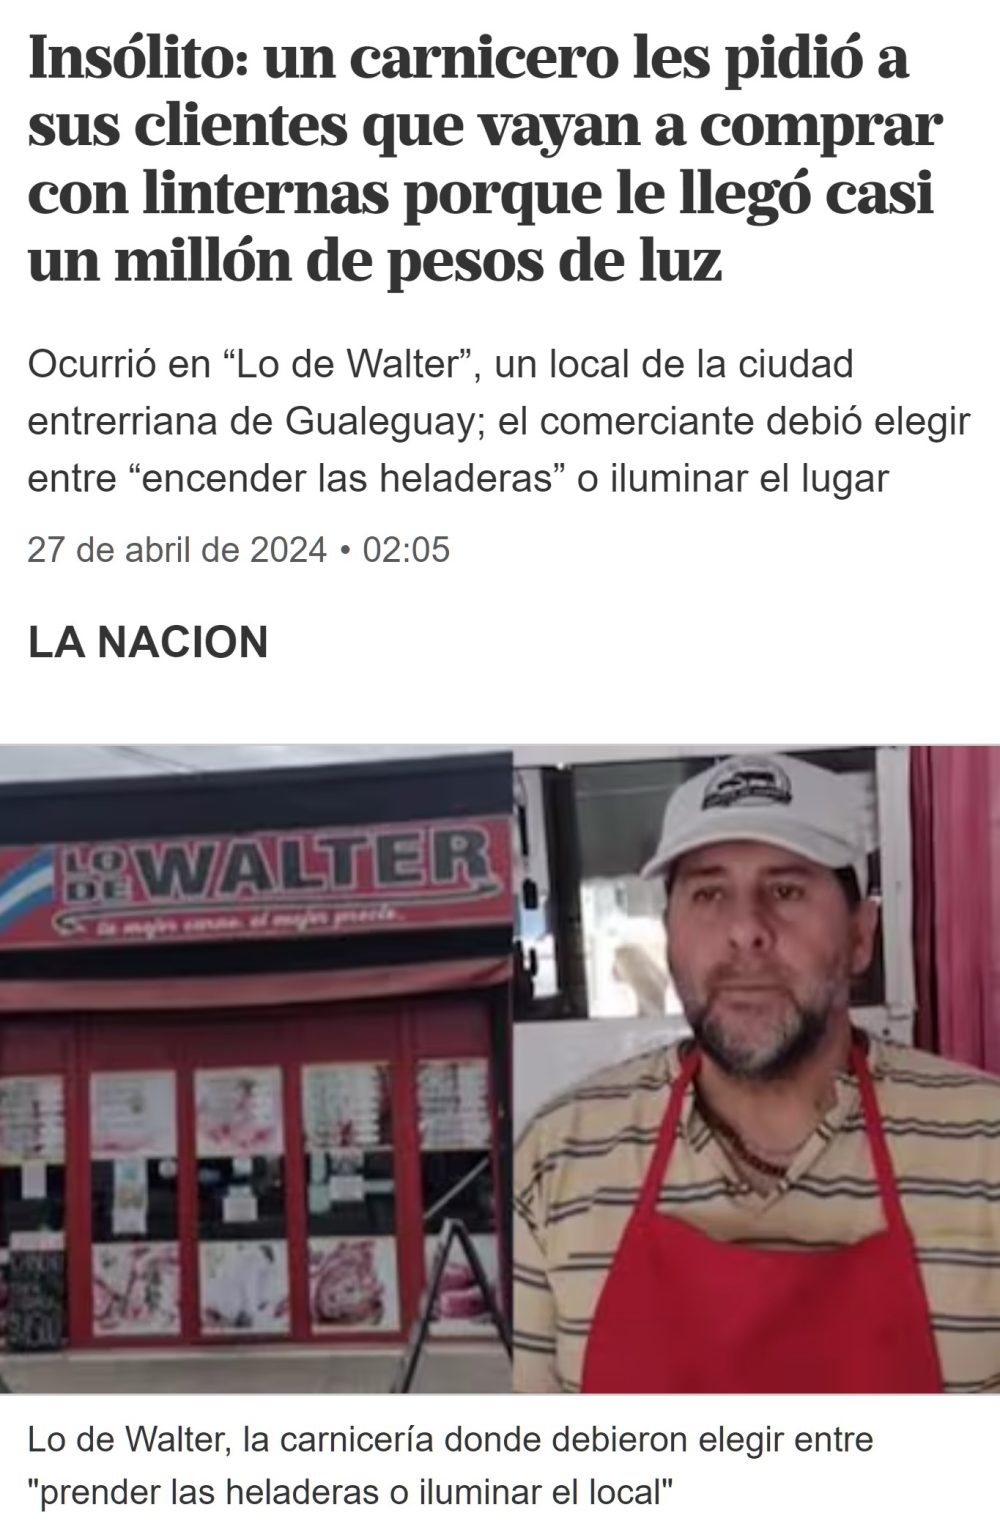 Carnicero argentino recibe una factura de la luz de casi 1 millón de pesos y pide a sus clientes que vayan con linternas.